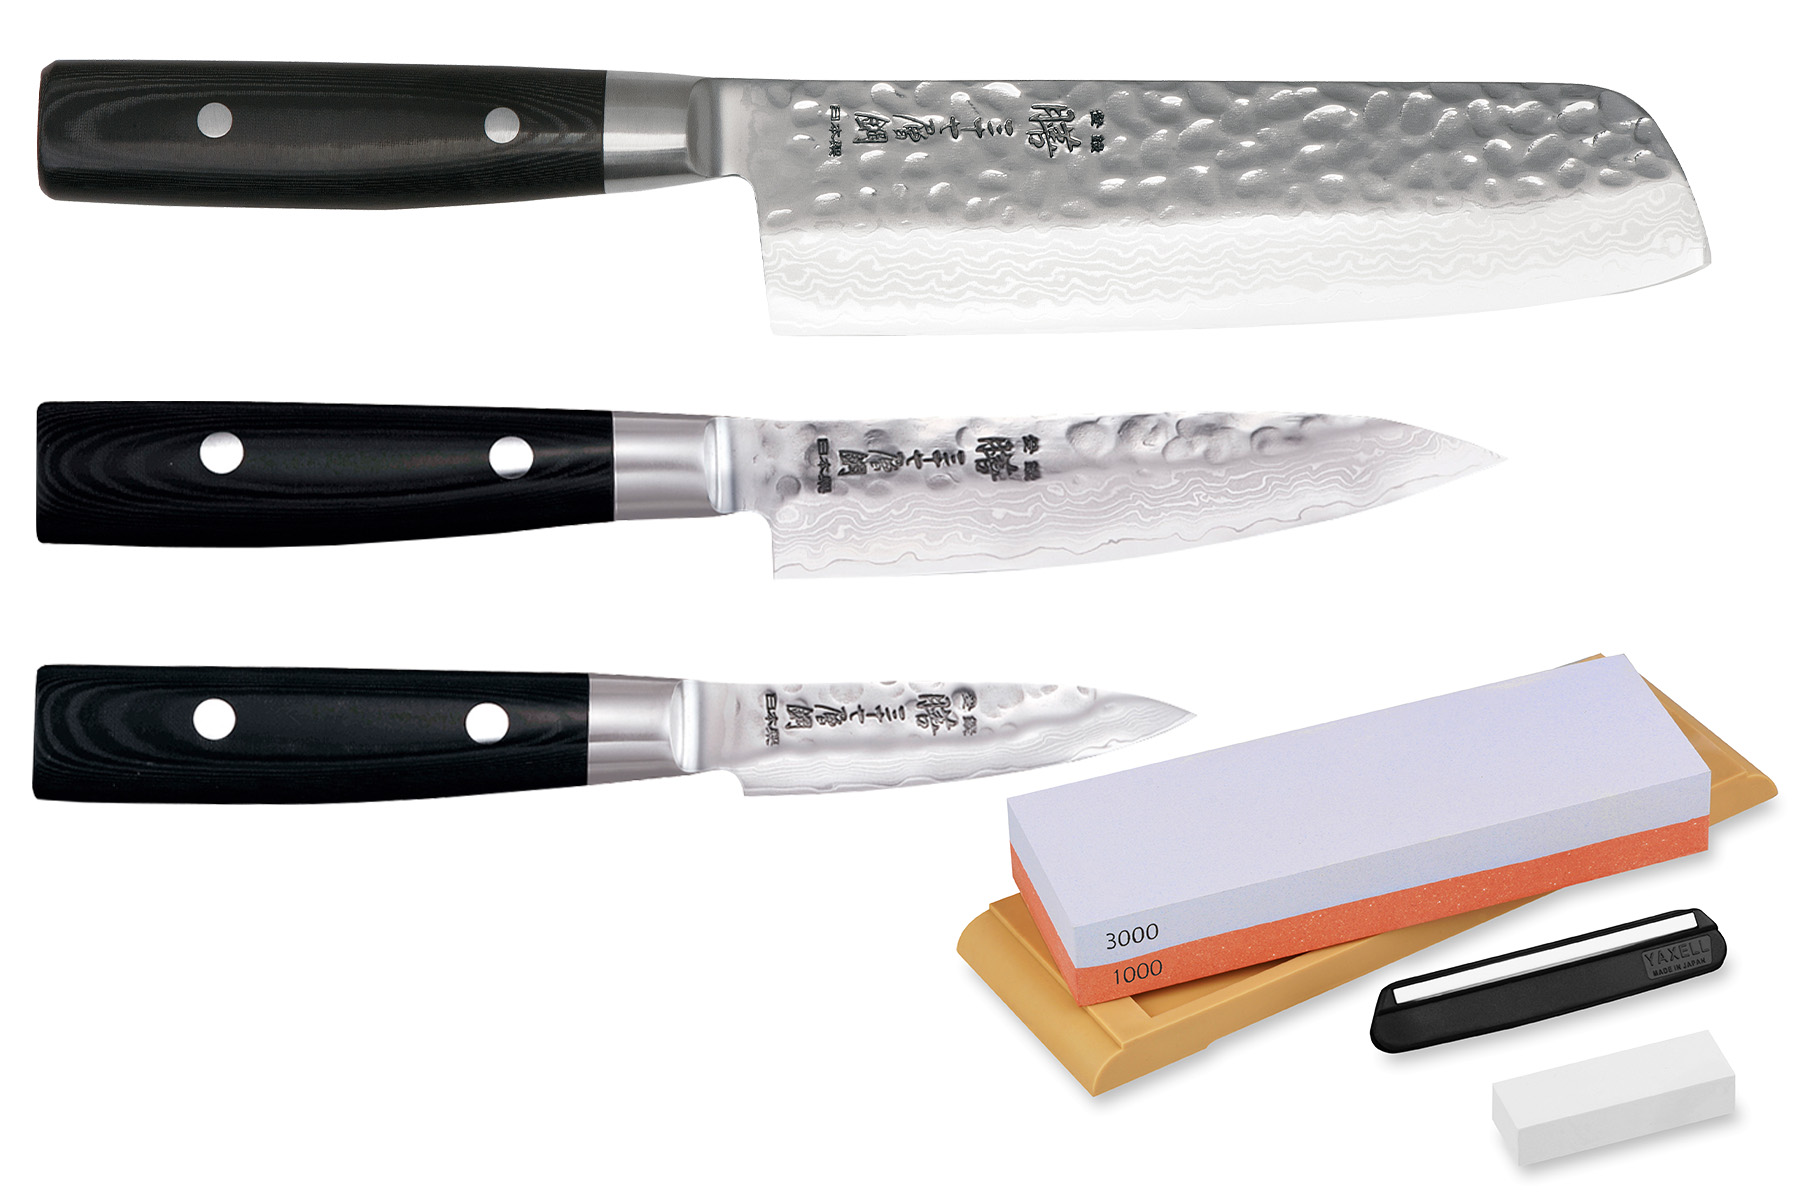 Set de 3 couteaux japonais Yaxell Zen - Forme vegan + pierre à aiguiser Yaxell